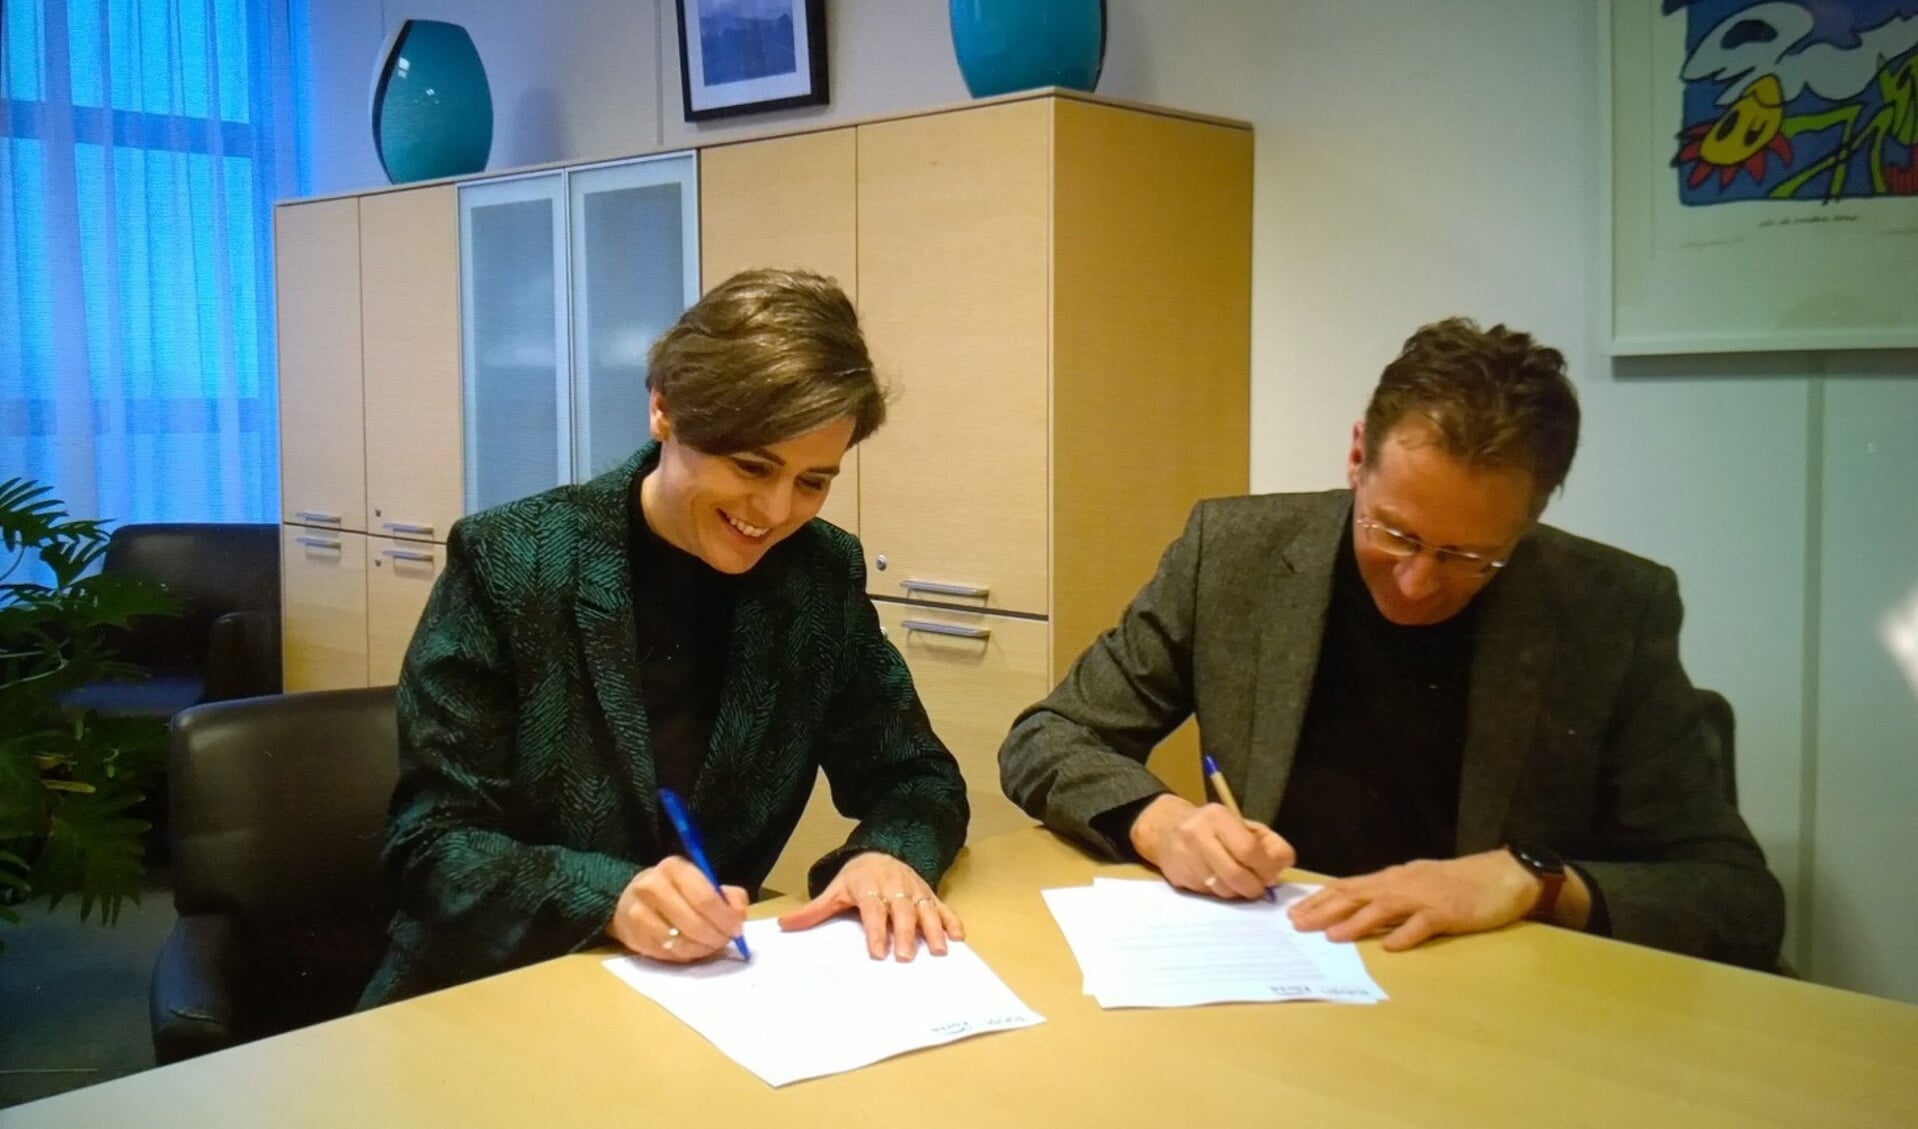 De ondertekening van de samenwerking tussen Stichting Tabijn en Forte Kinderopvang: links
Esther Zijl, 